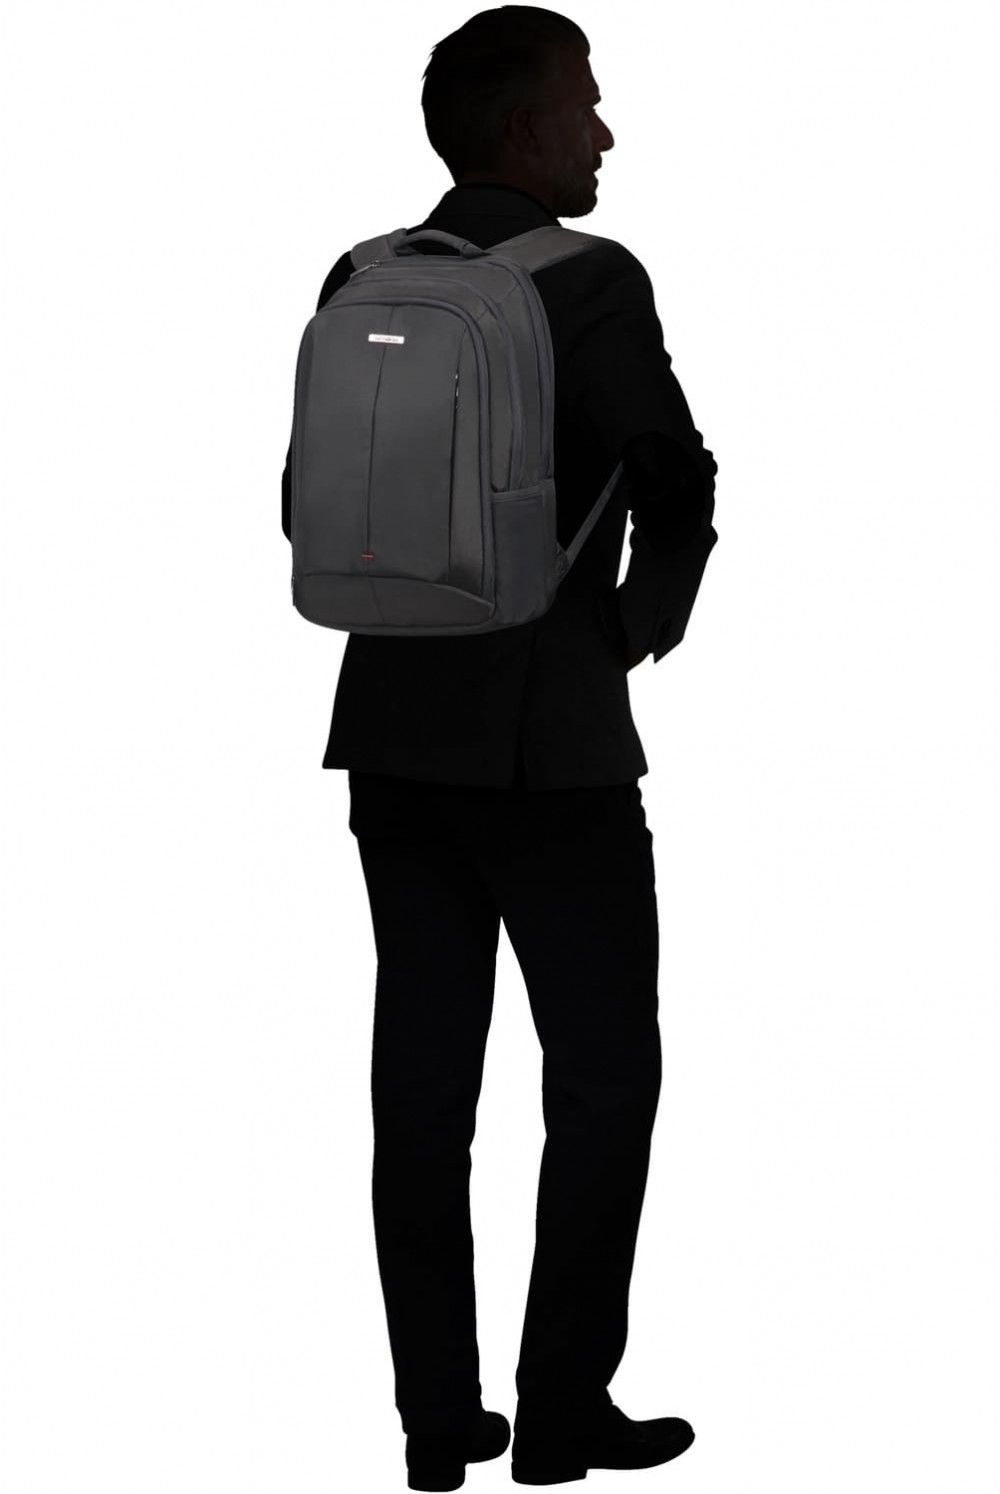 Samsonite Guardit 2 Laptop Backpack 15.6 inches